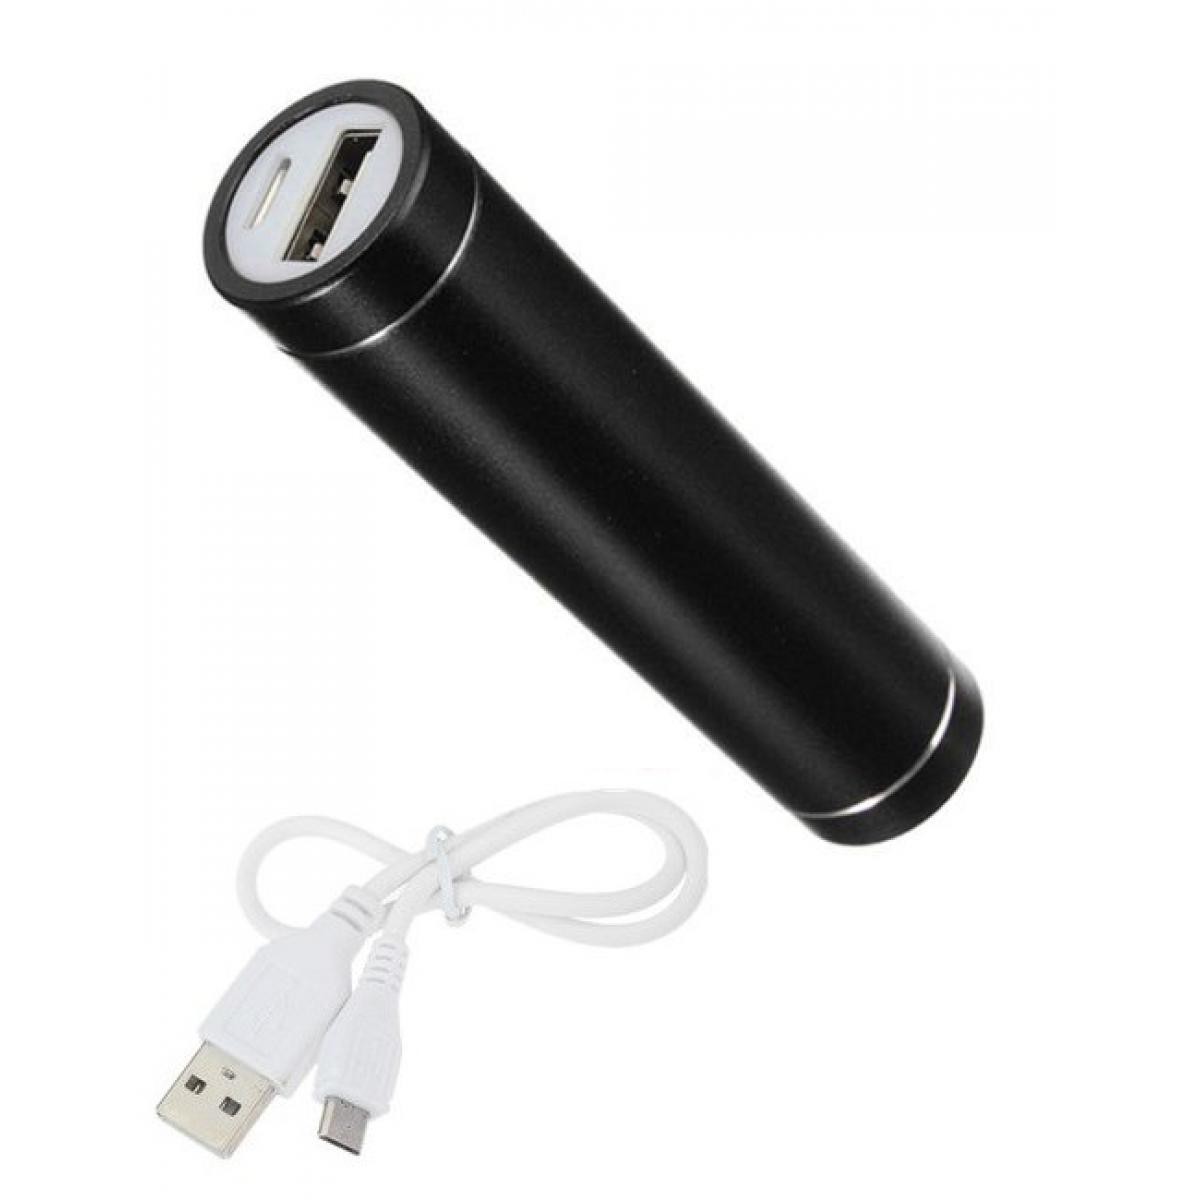 Shot - Batterie Chargeur Externe pour SAMSUNG Galaxy S10 Lite Power Bank 2600mAh avec Cable USB/Mirco USB Secours Telephone (NOIR) - Chargeur secteur téléphone